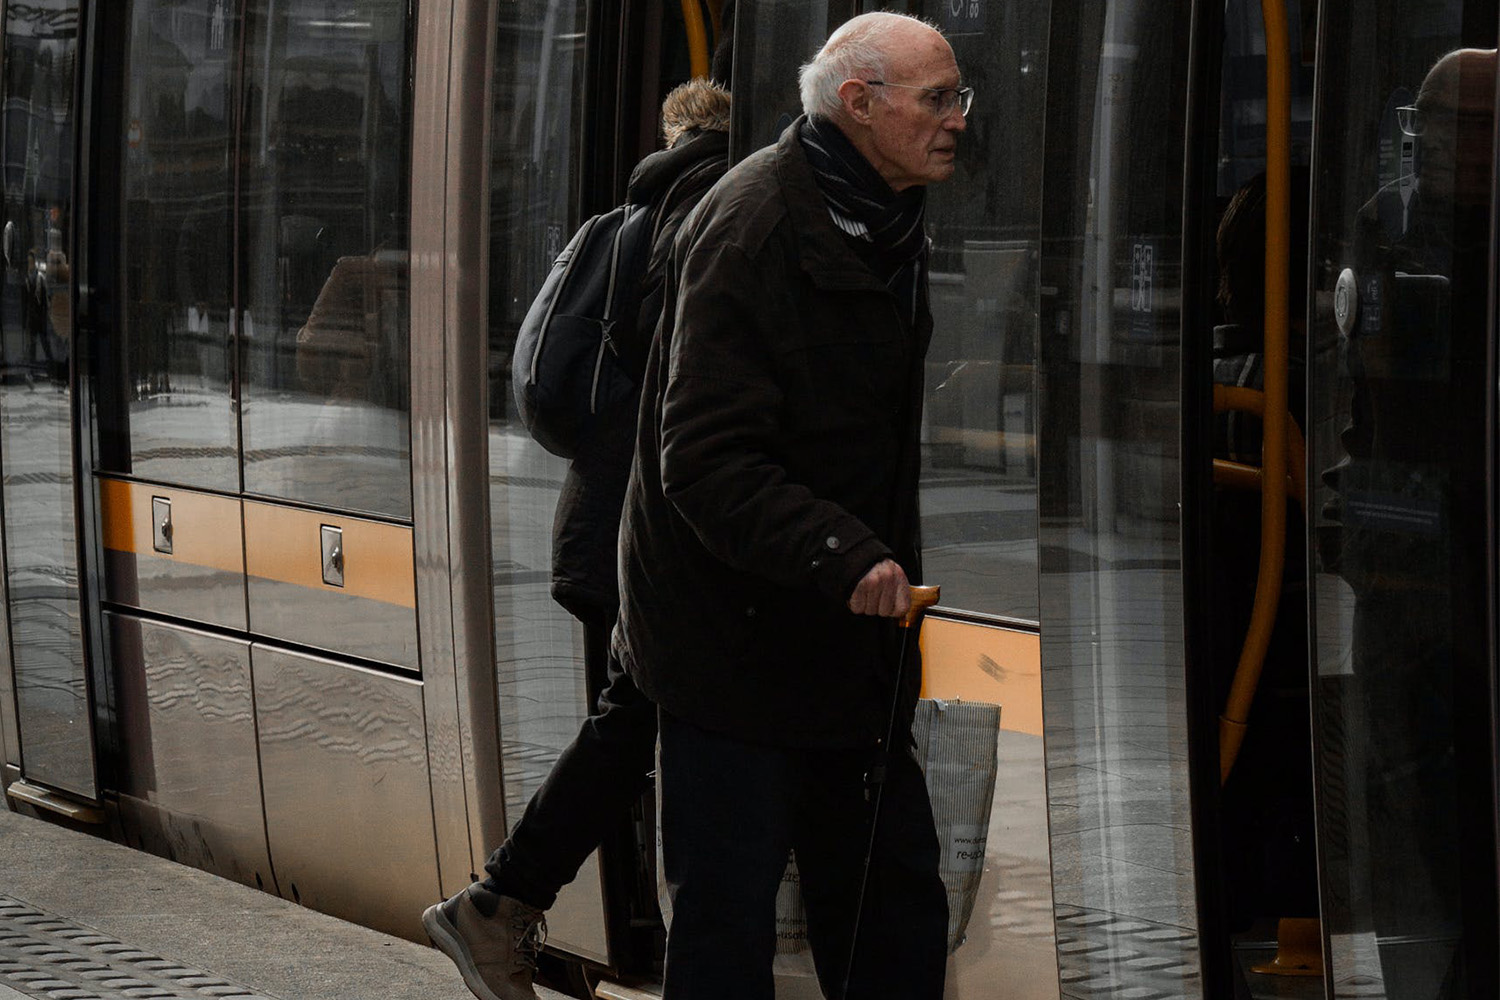 Dieses Bild zeigt einen Senior mit Gehstock vor einer S-Bahn